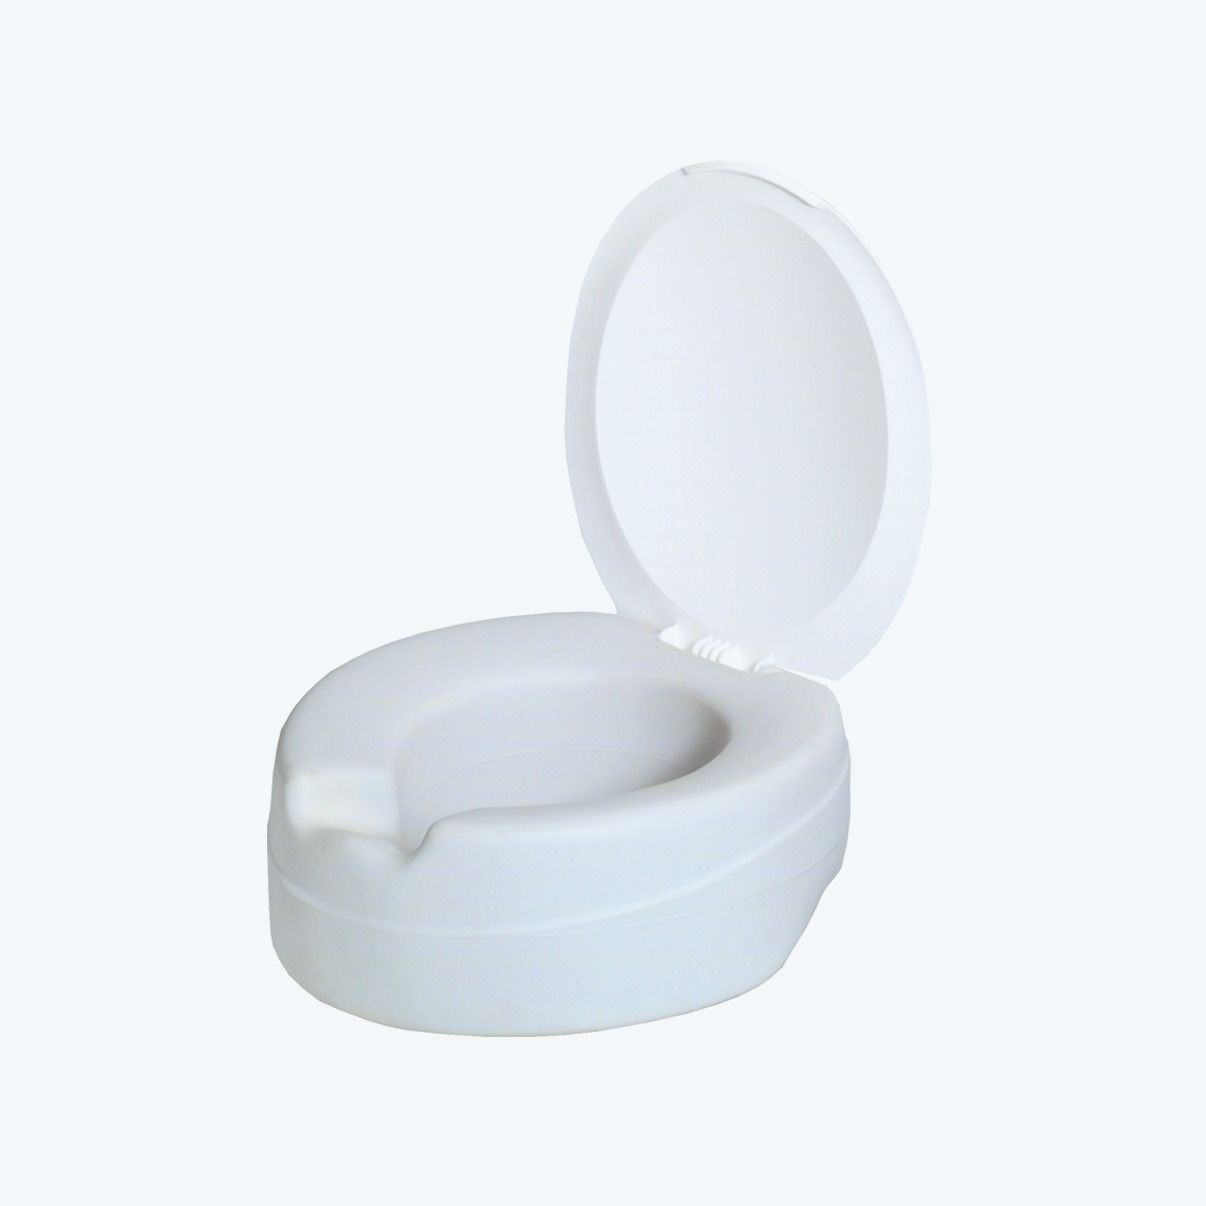 Rehausseurs de toilettes avec ou sans accoudoirs - AXEO MEDICAL